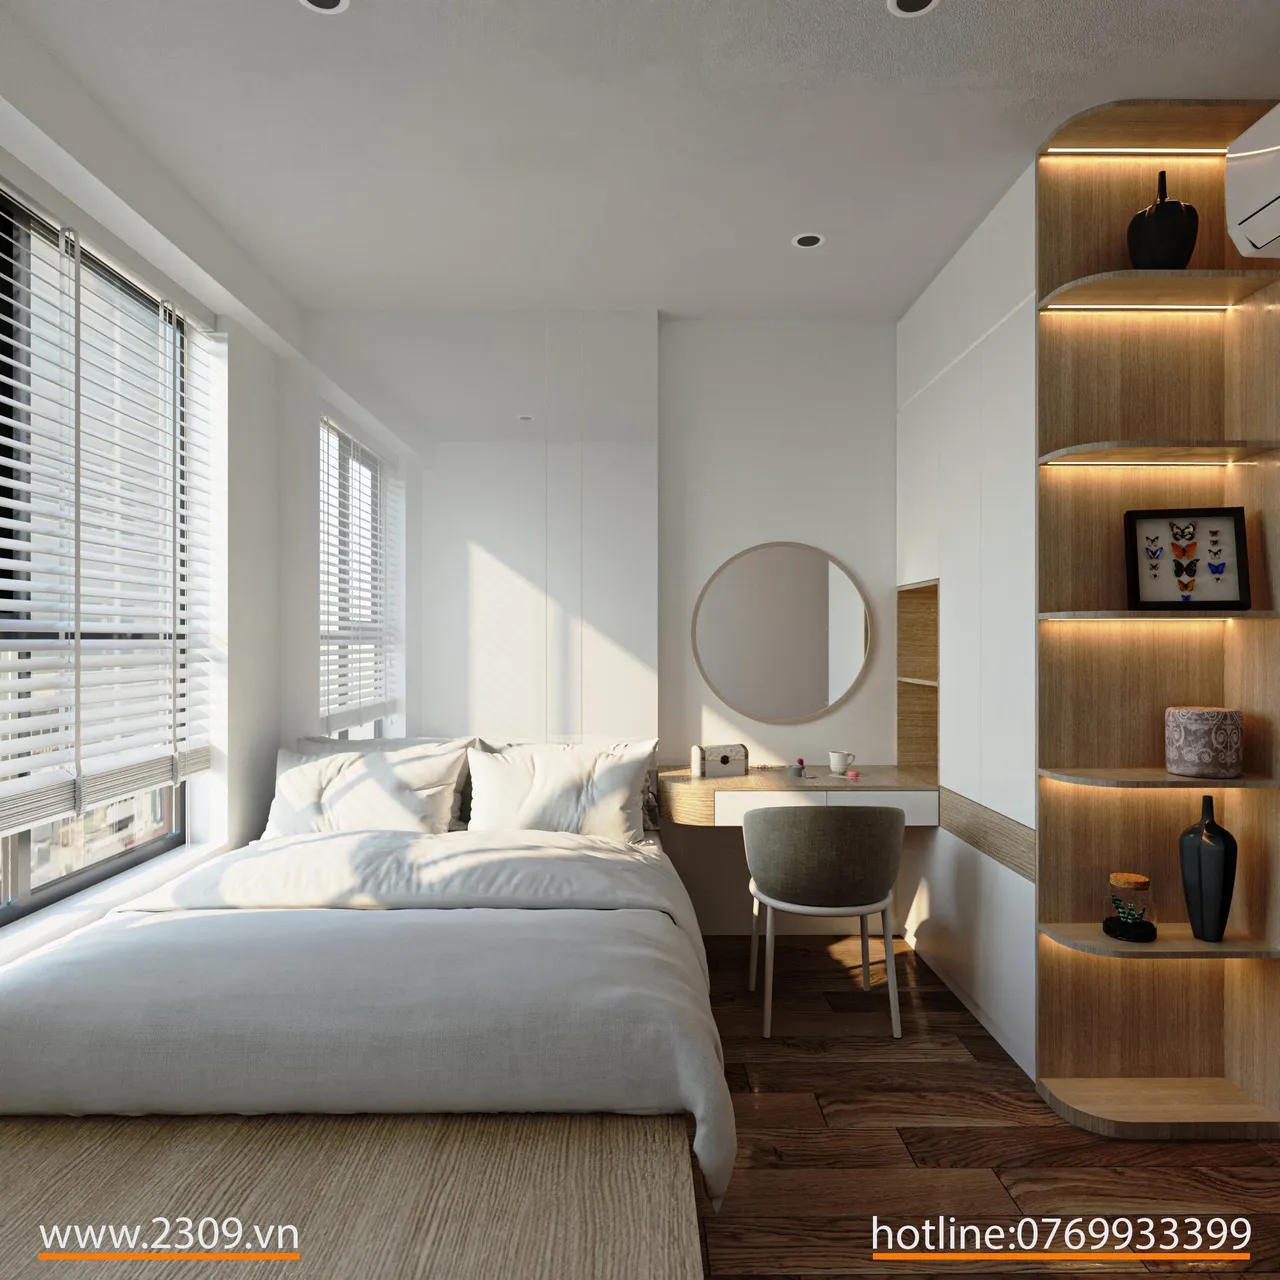 Concept nội thất phòng ngủ Căn hộ Bcons Dĩ An, Bình Dương phong cách Bắc Âu Scandinavian